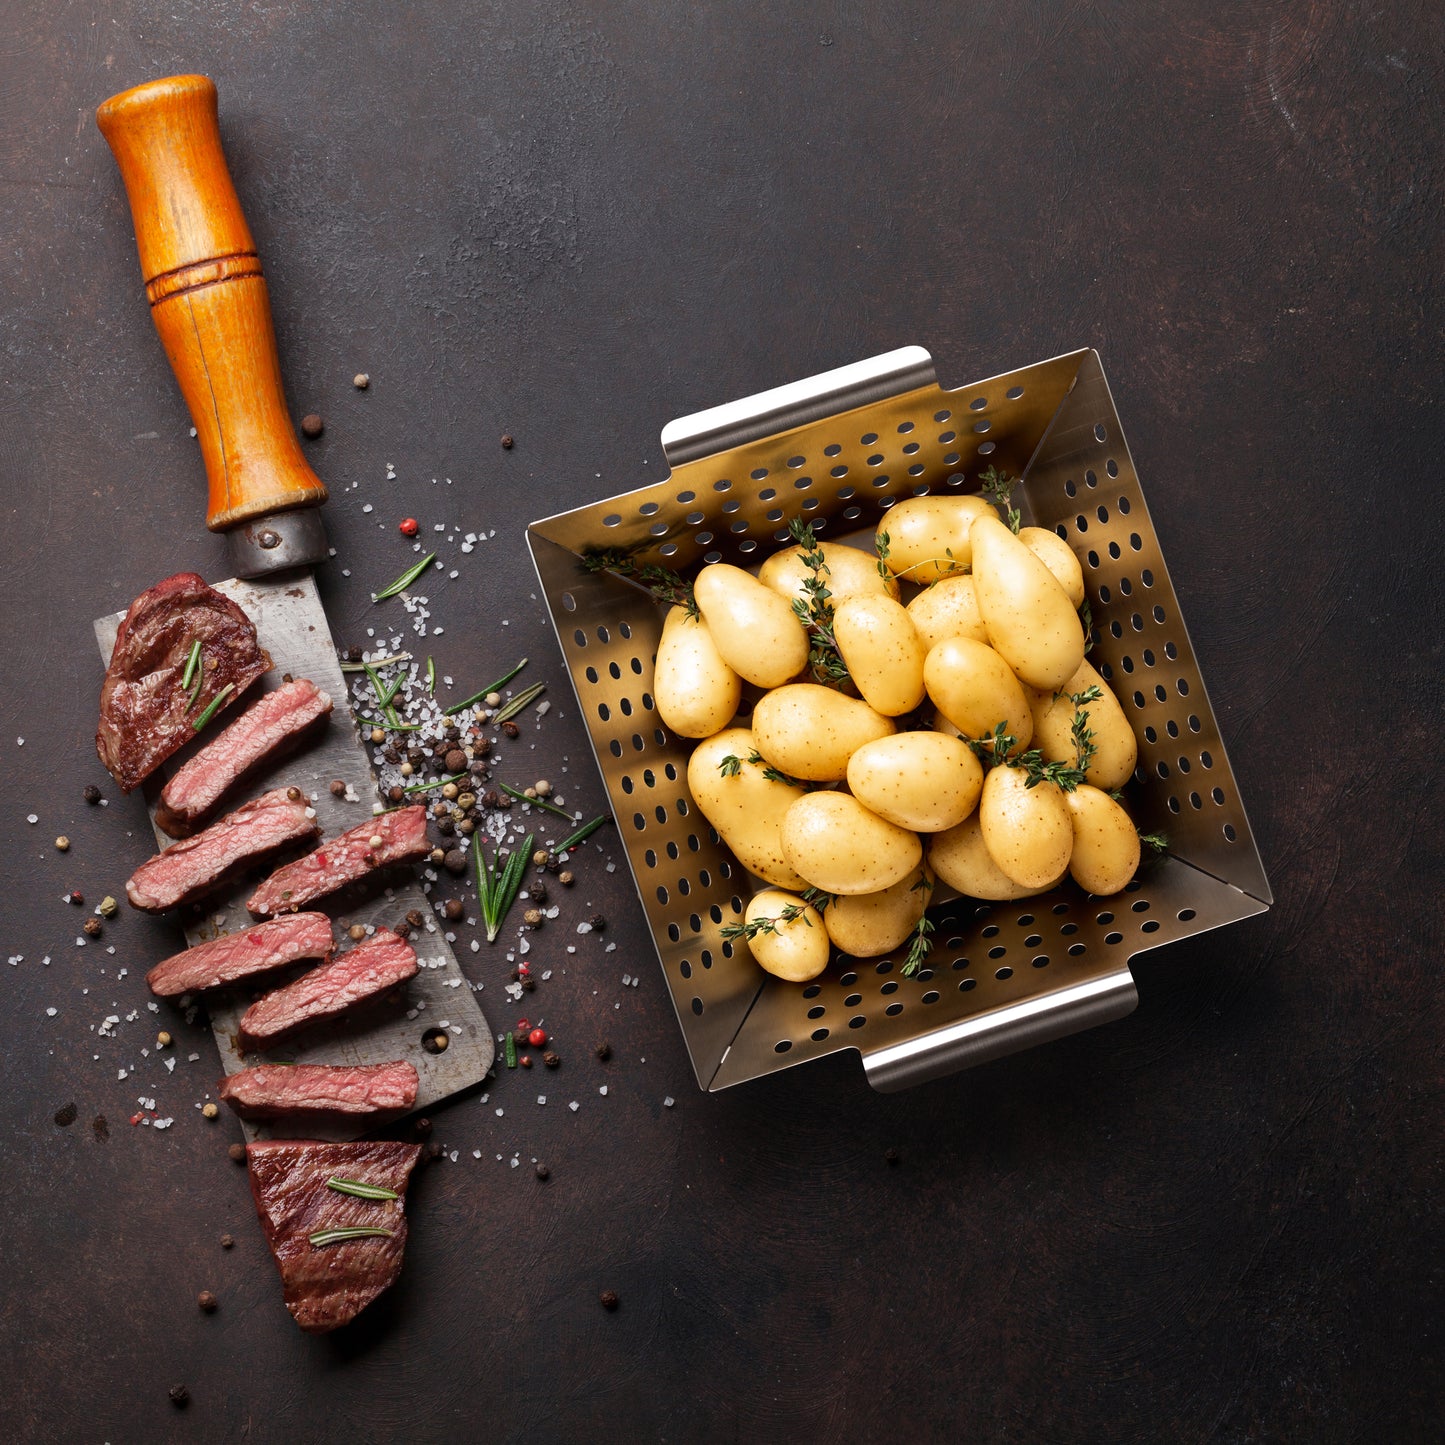 Kleiner Edelstahl-Grillkorb mit Kartoffeln und Steak auf dunklem Untergrund.